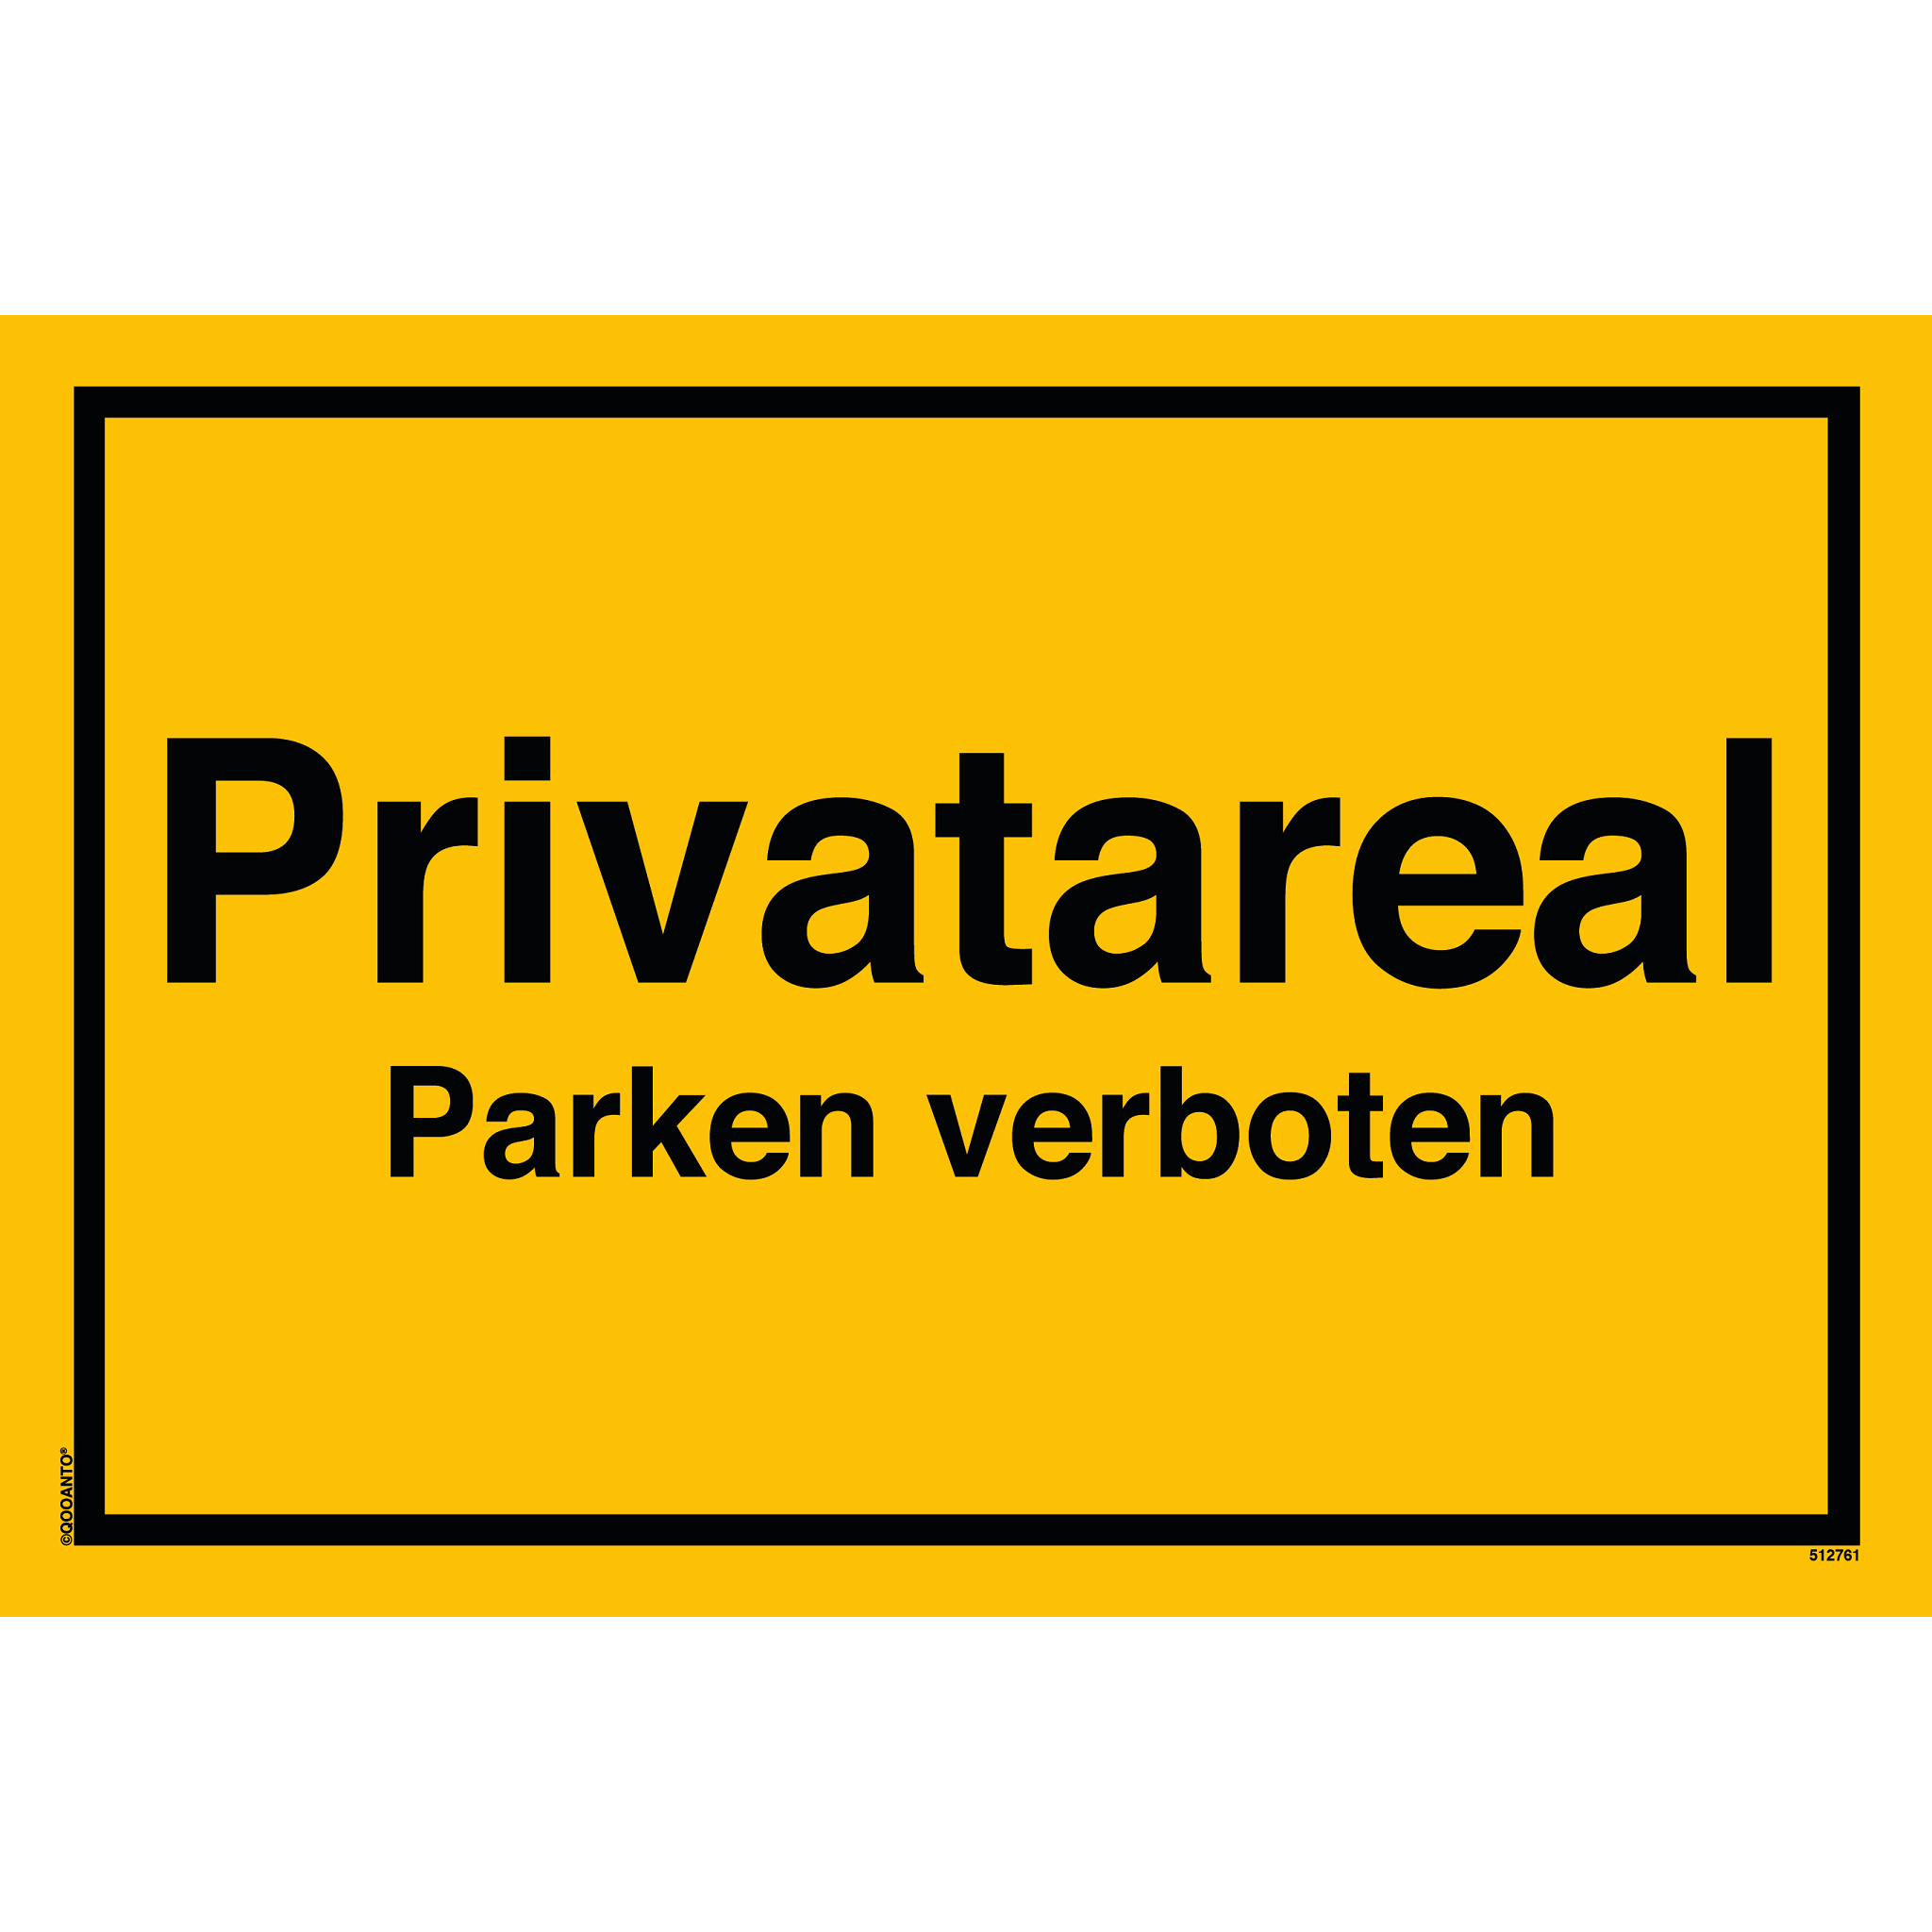 Privatareal Parken verboten, gelb, Schild oder Aufkleber